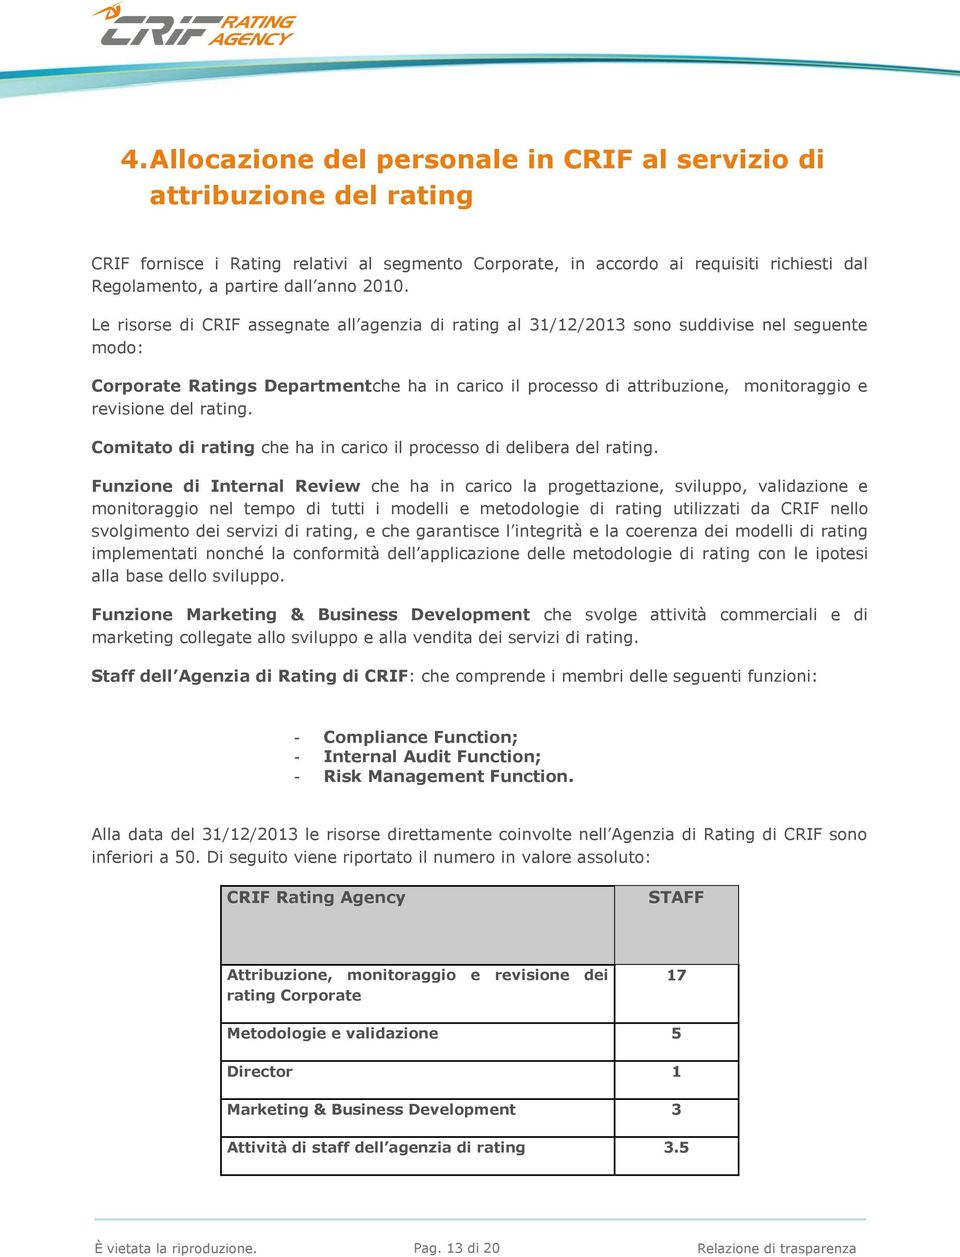 Le risorse di CRIF assegnate all agenzia di rating al 31/12/2013 sono suddivise nel seguente modo: Corporate Ratings Departmentche ha in carico il processo di attribuzione, monitoraggio e revisione